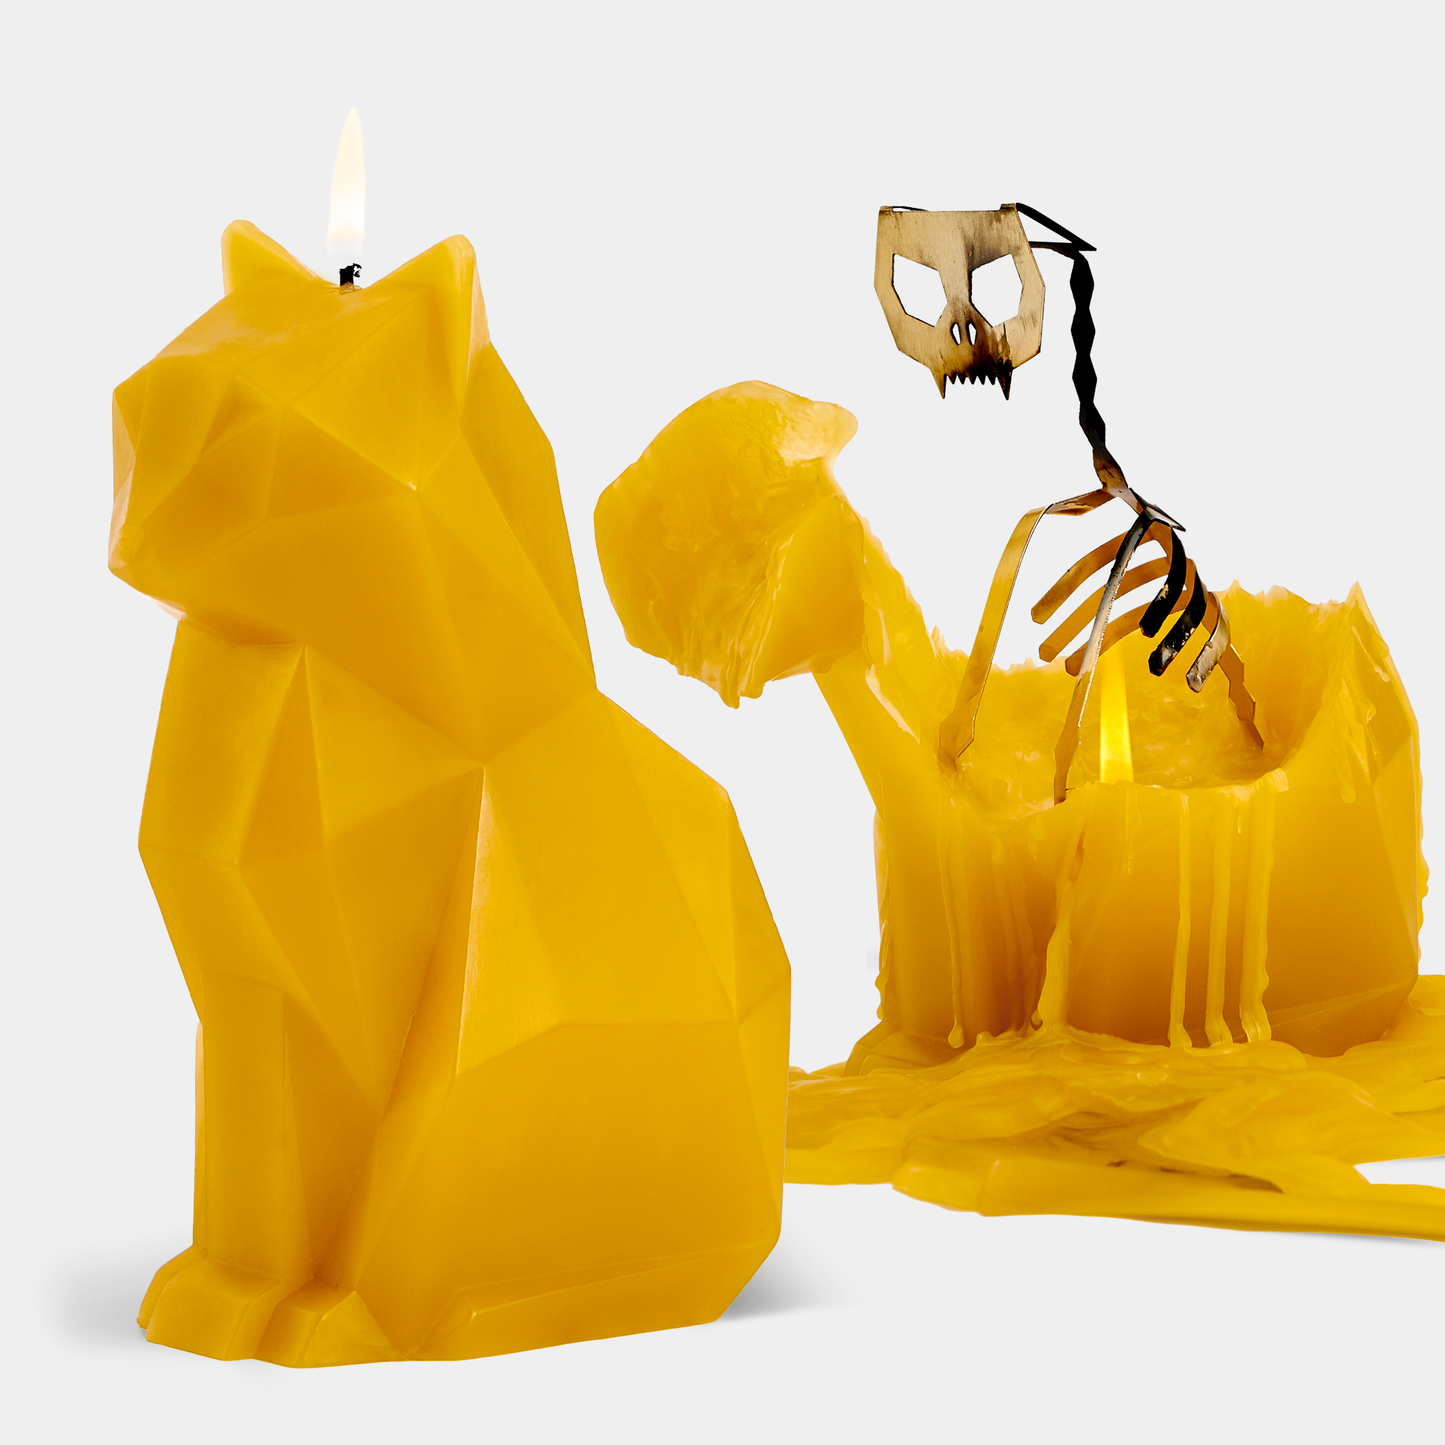 PyroPet Kisa Cat Skeleton Candle - Mustard Yellow